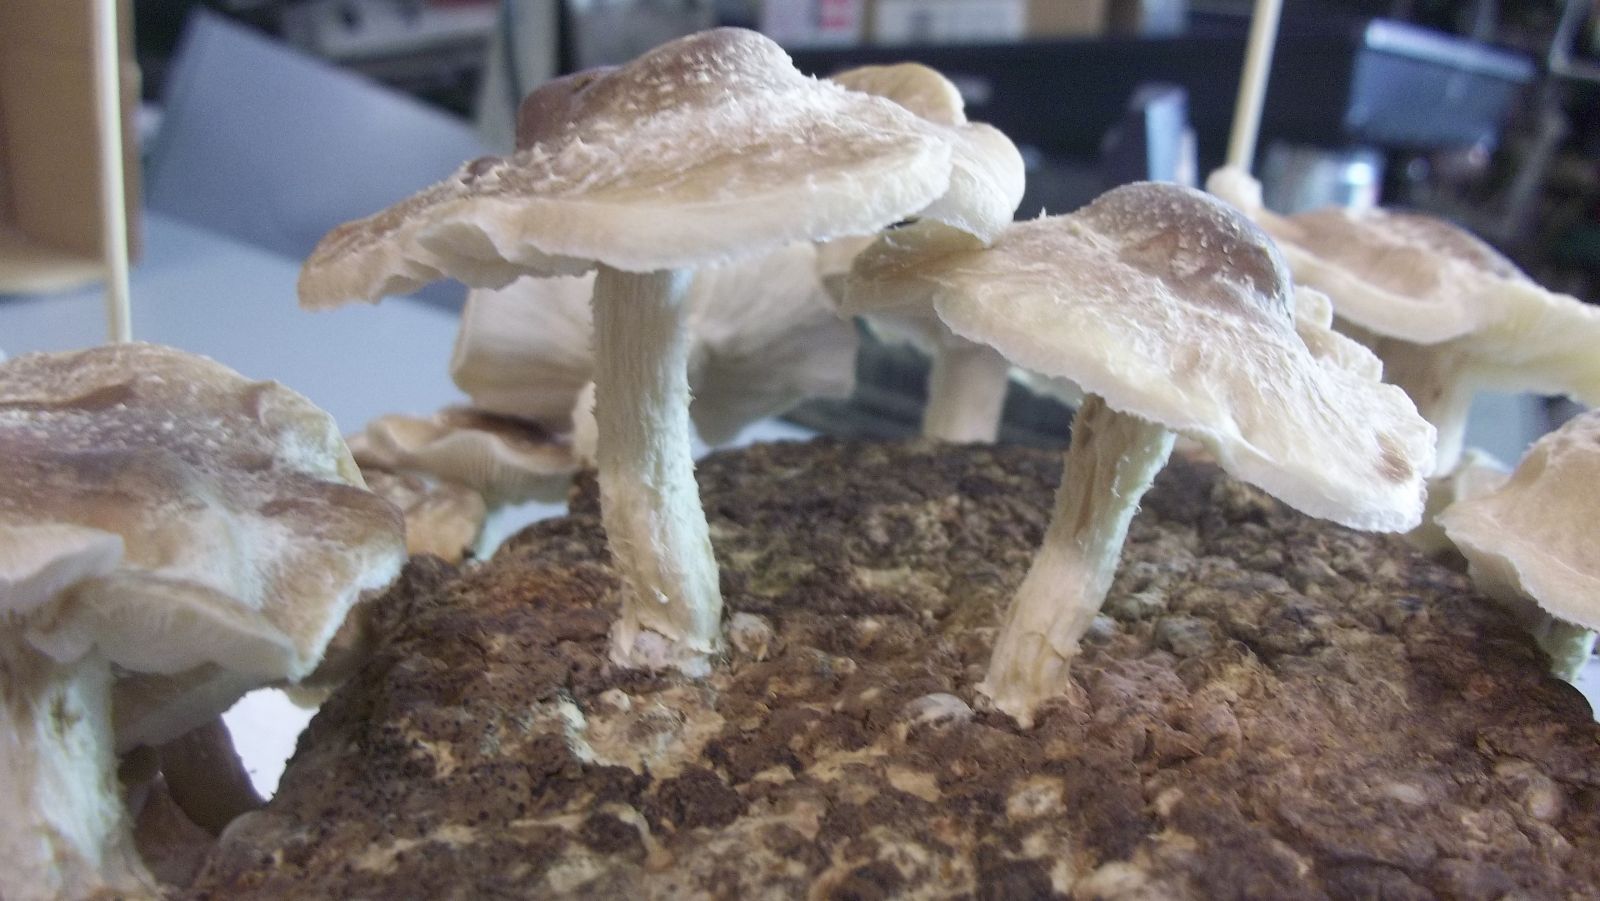 shiitake mushroom kit